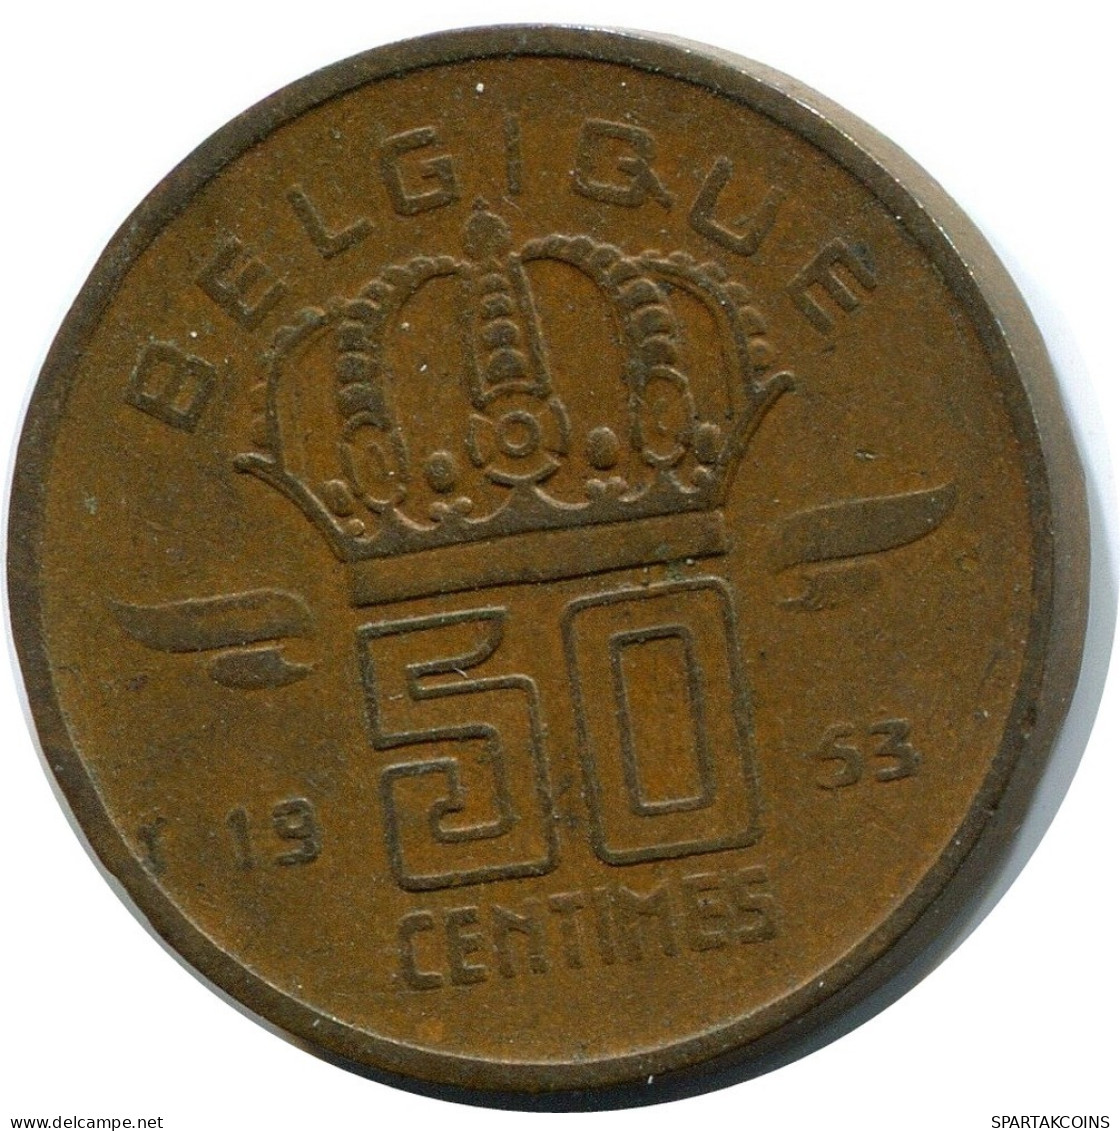 50 CENTIMES 1953 DUTCH Text BELGIUM Coin #BA395.U.A - 50 Centimes